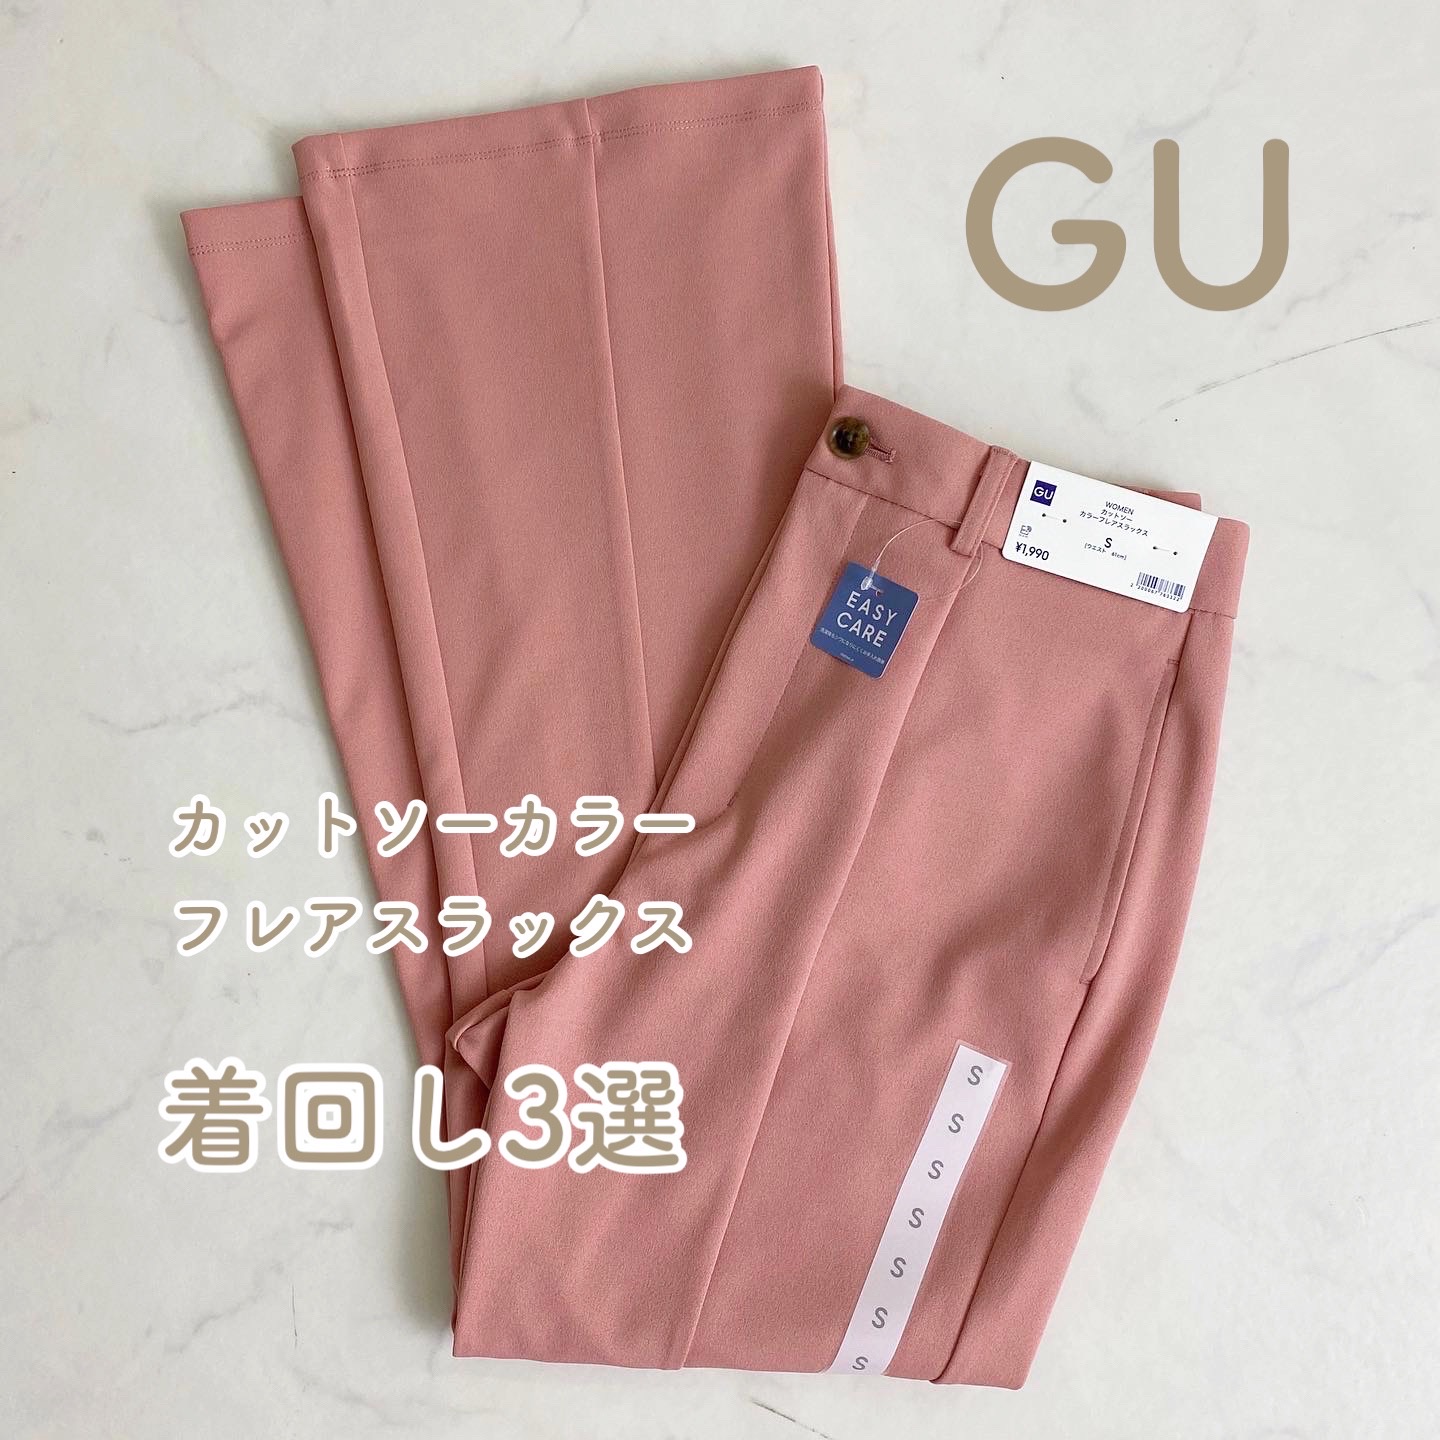 GU ピンクベージュ フレアパンツ - パンツ